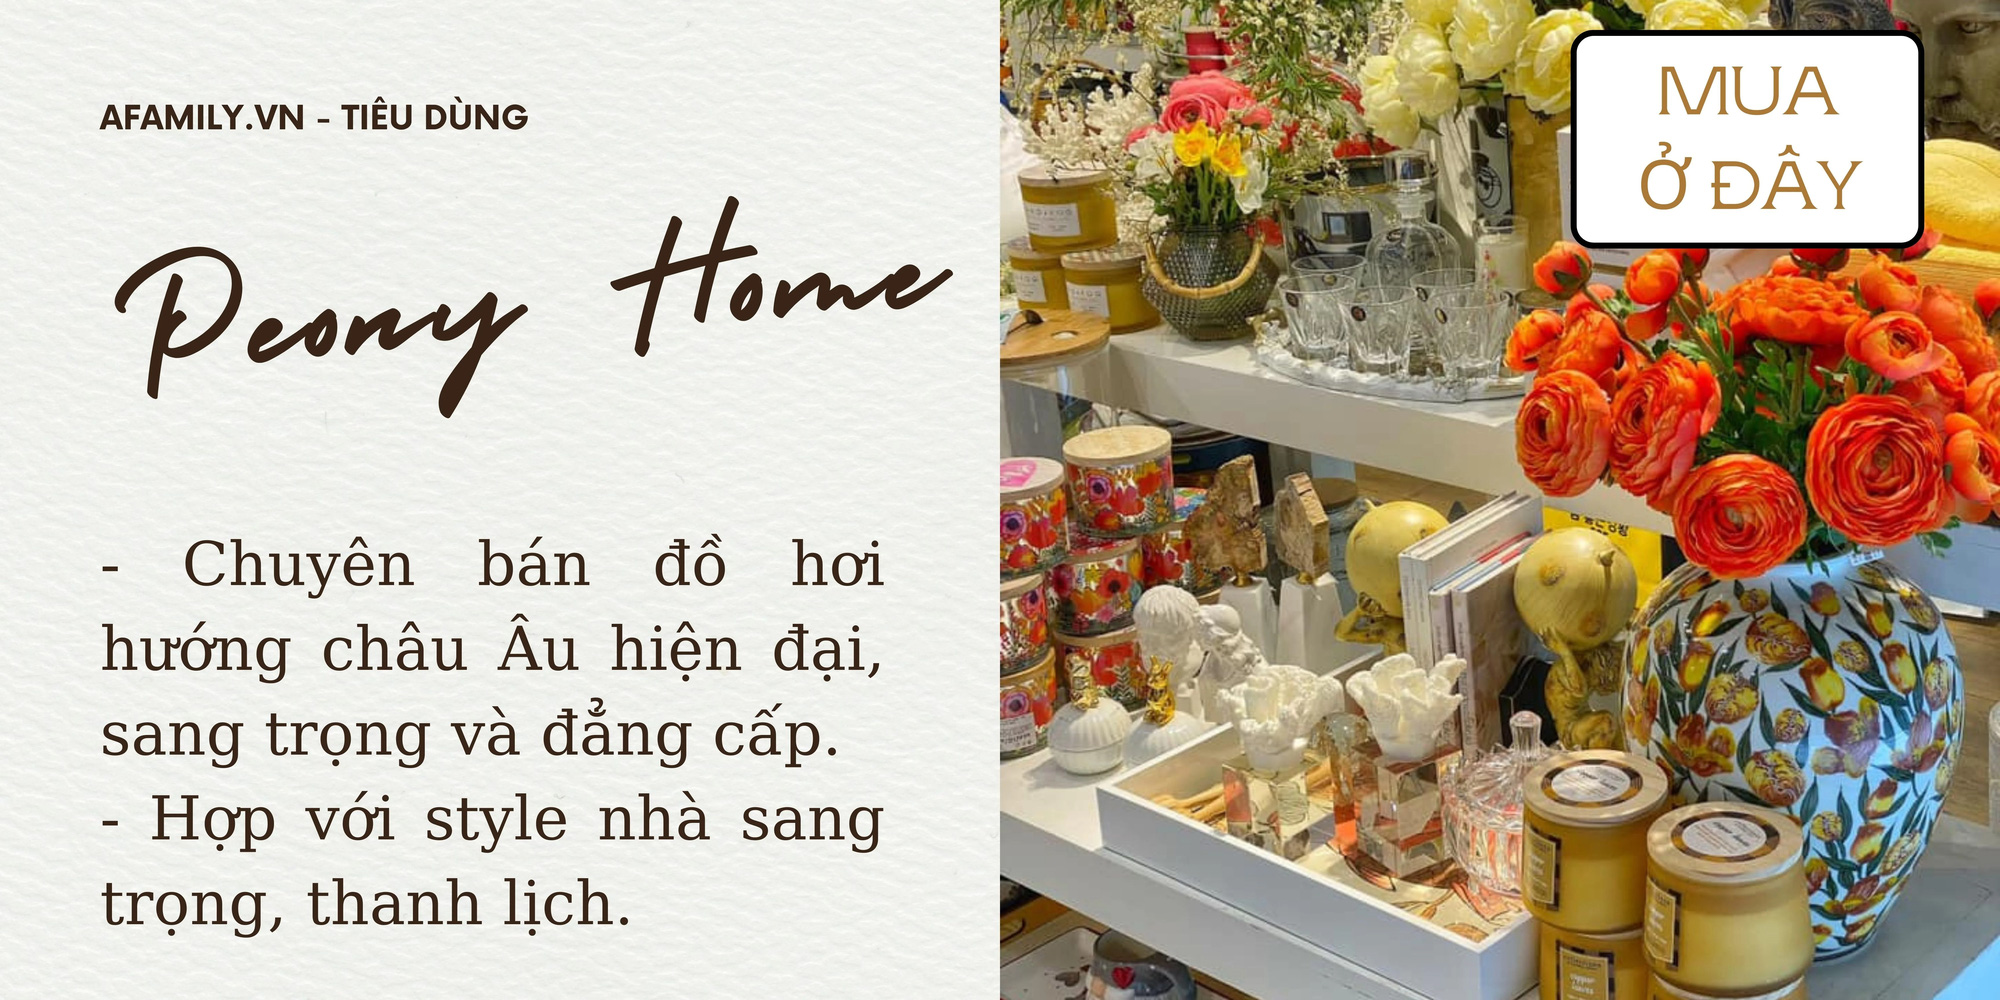 Hà Nội có 5 cửa hàng bán đồ trang trí nhà cửa giá rẻ “nhìn cái là ưng” không thể bỏ lỡ dịp sắm sửa cuối năm - Ảnh 9.